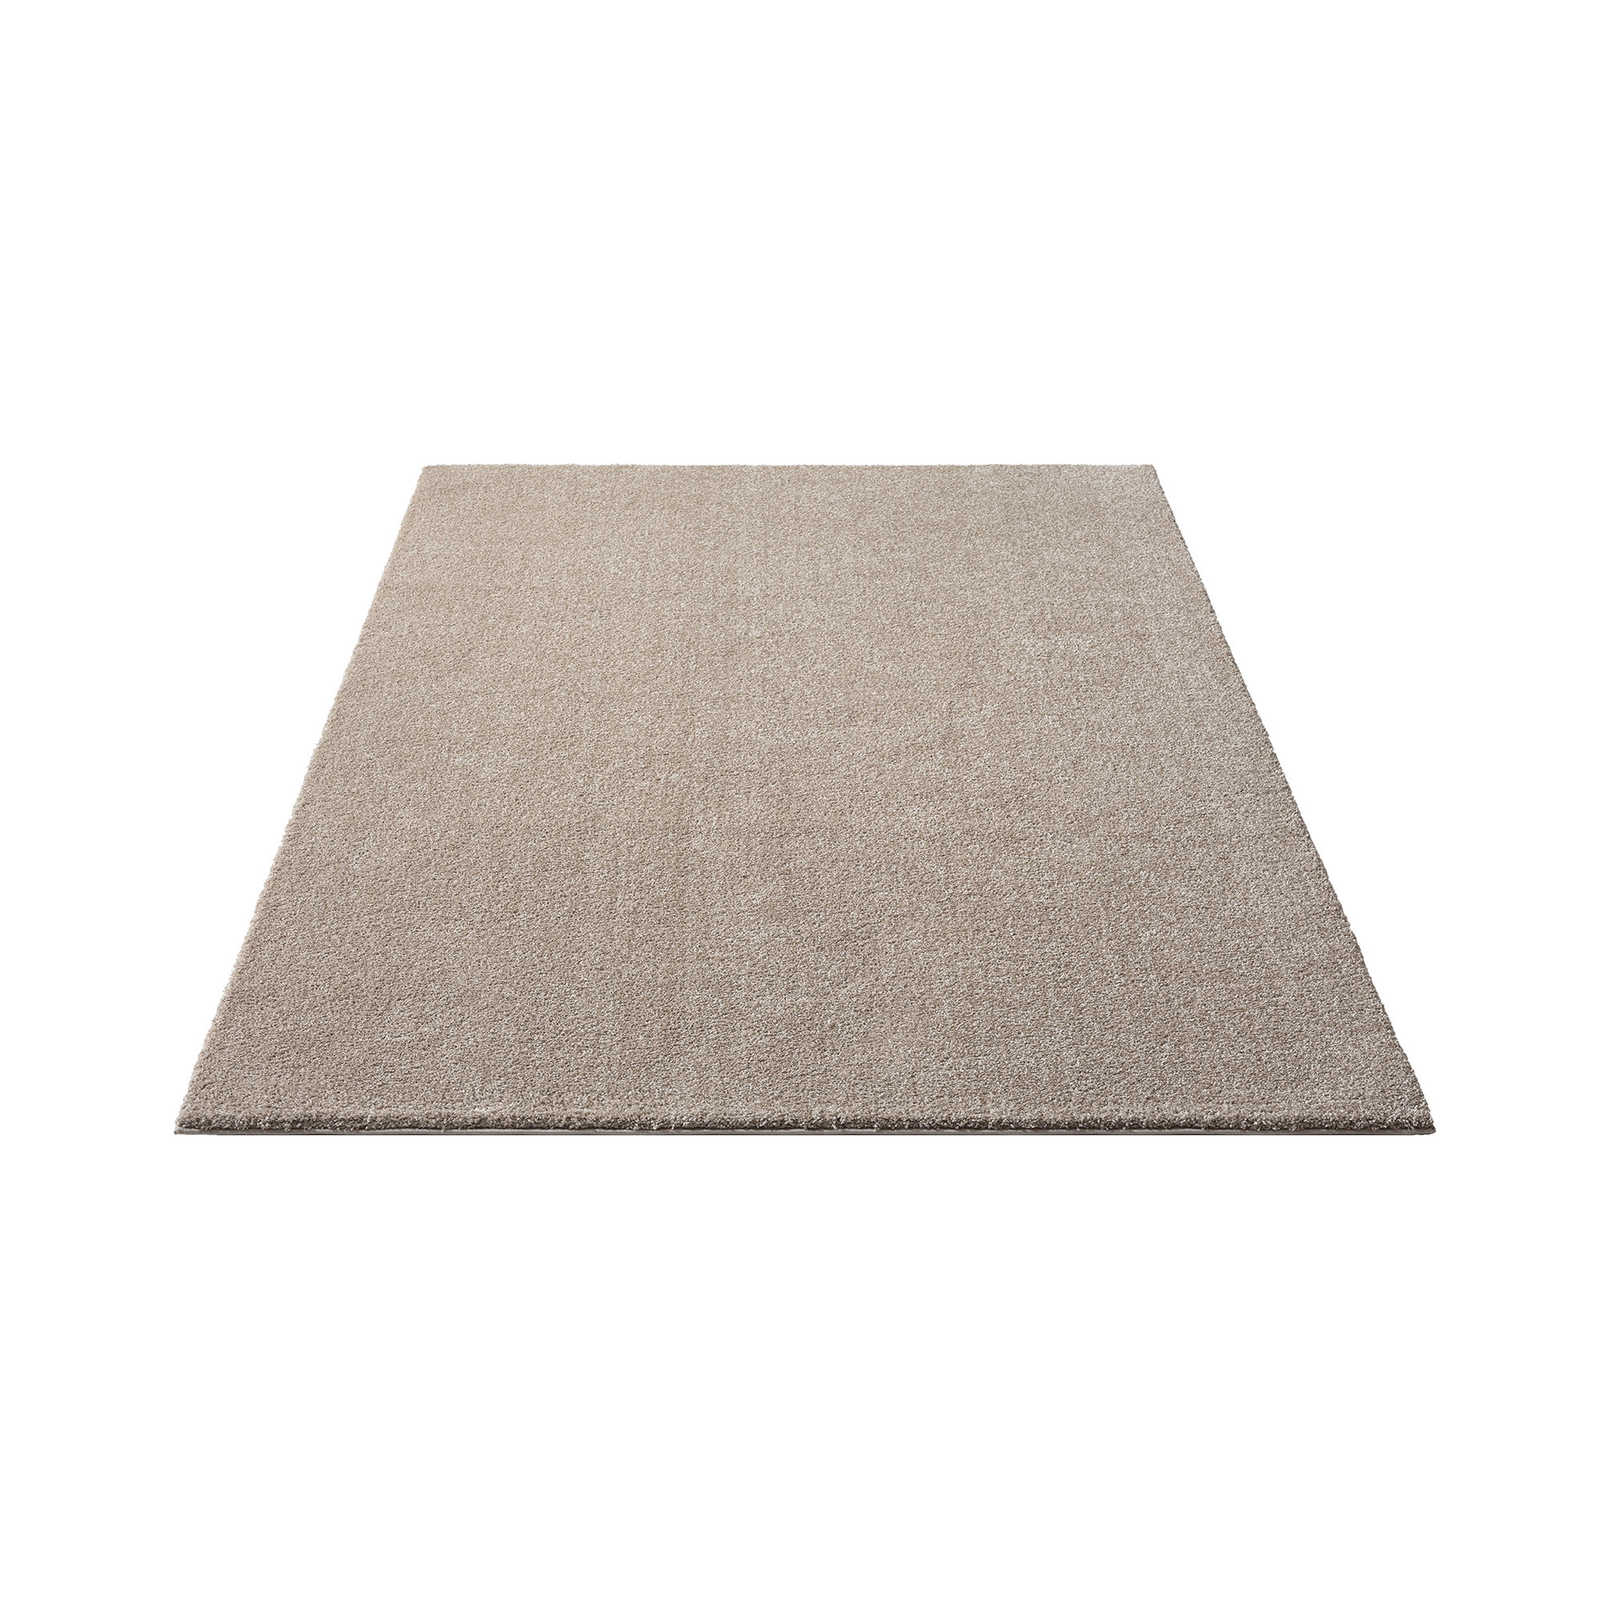 Sanfter Kurzflor Teppich in Beige – 230 x 160 cm
